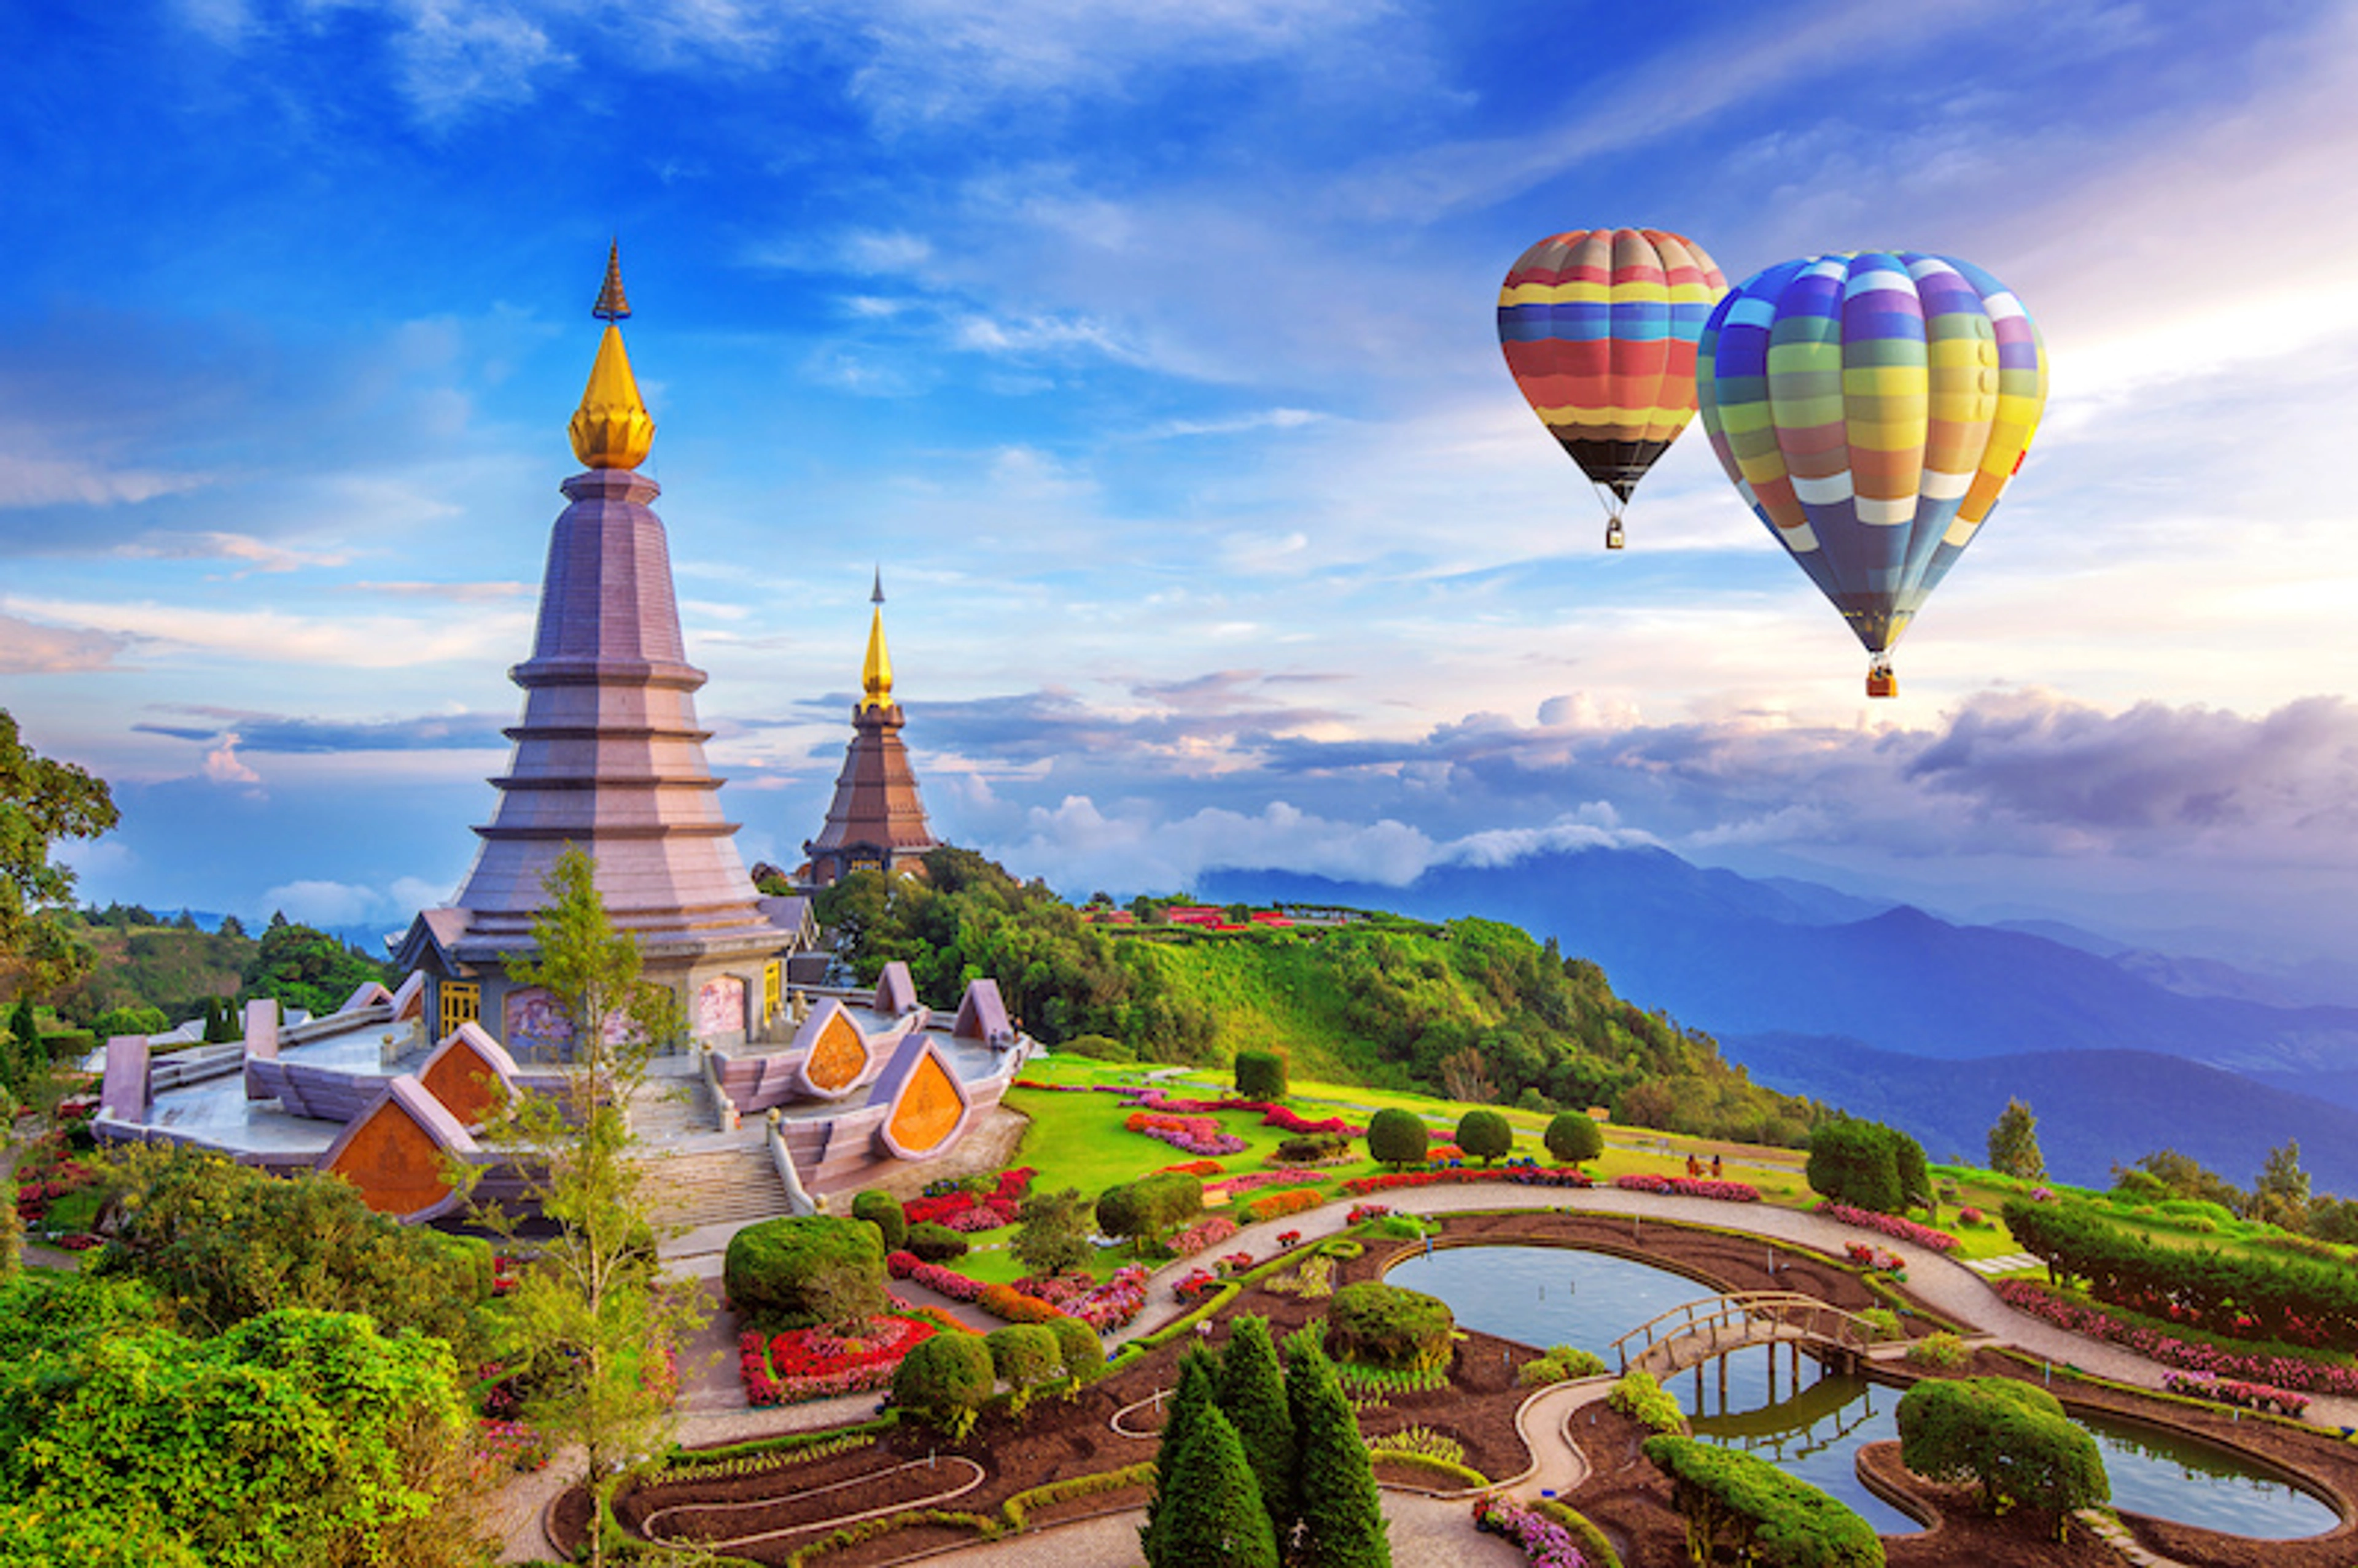 Tham gia trải nghiệm các hoạt động du lịch ngoài trời tại Thái Lan